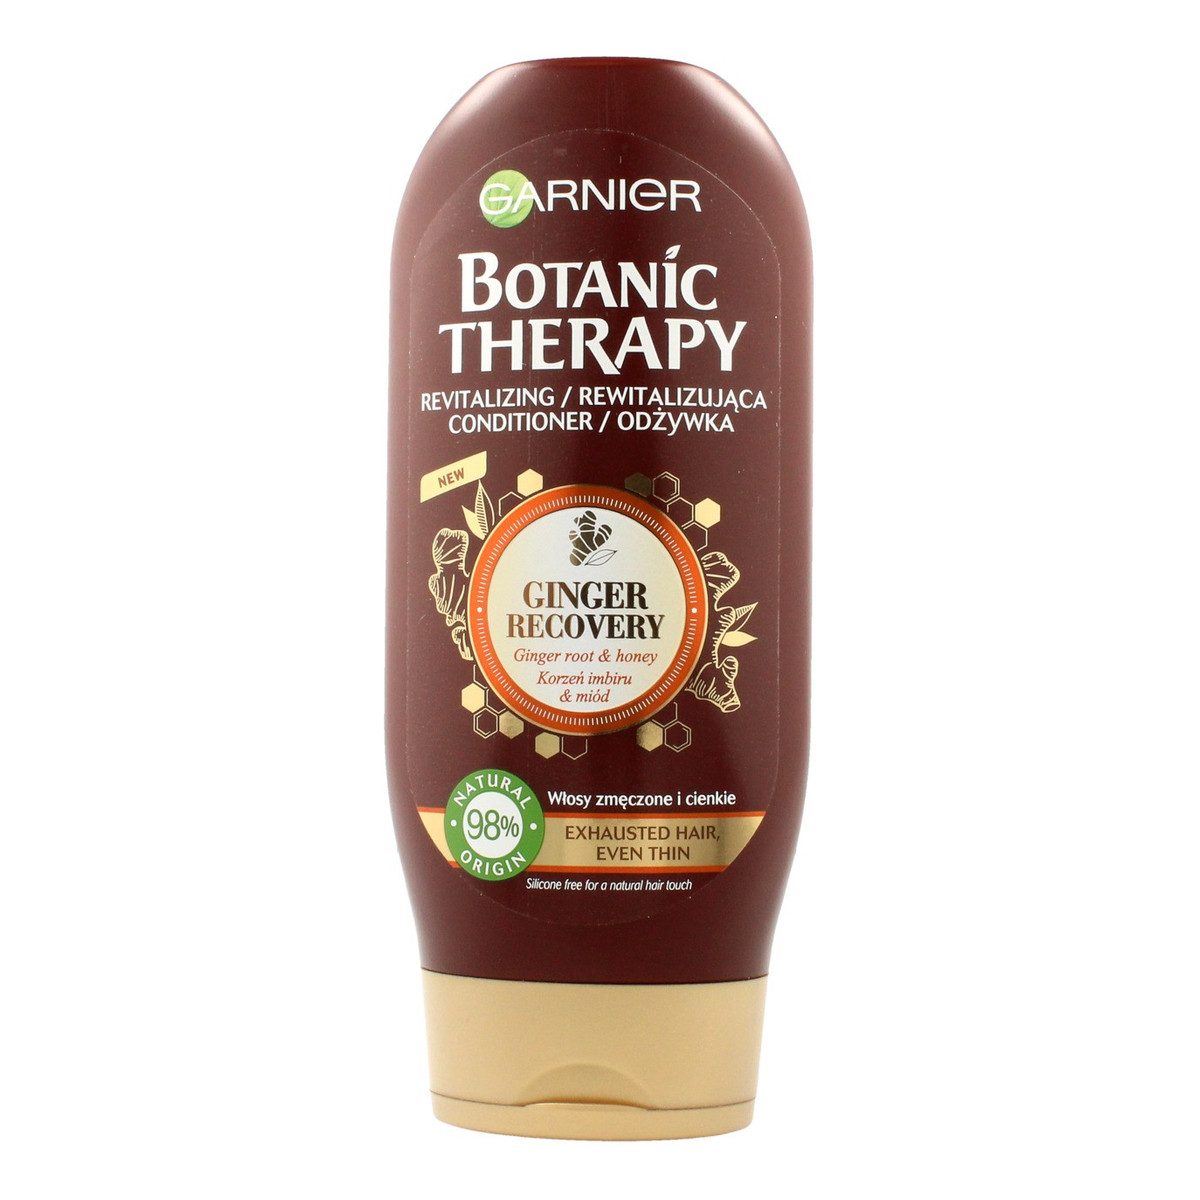 Garnier Botanic Therapy Korzeń Imbiru & Miód Odżywka do włosów cienkich i zmęczonych 200ml